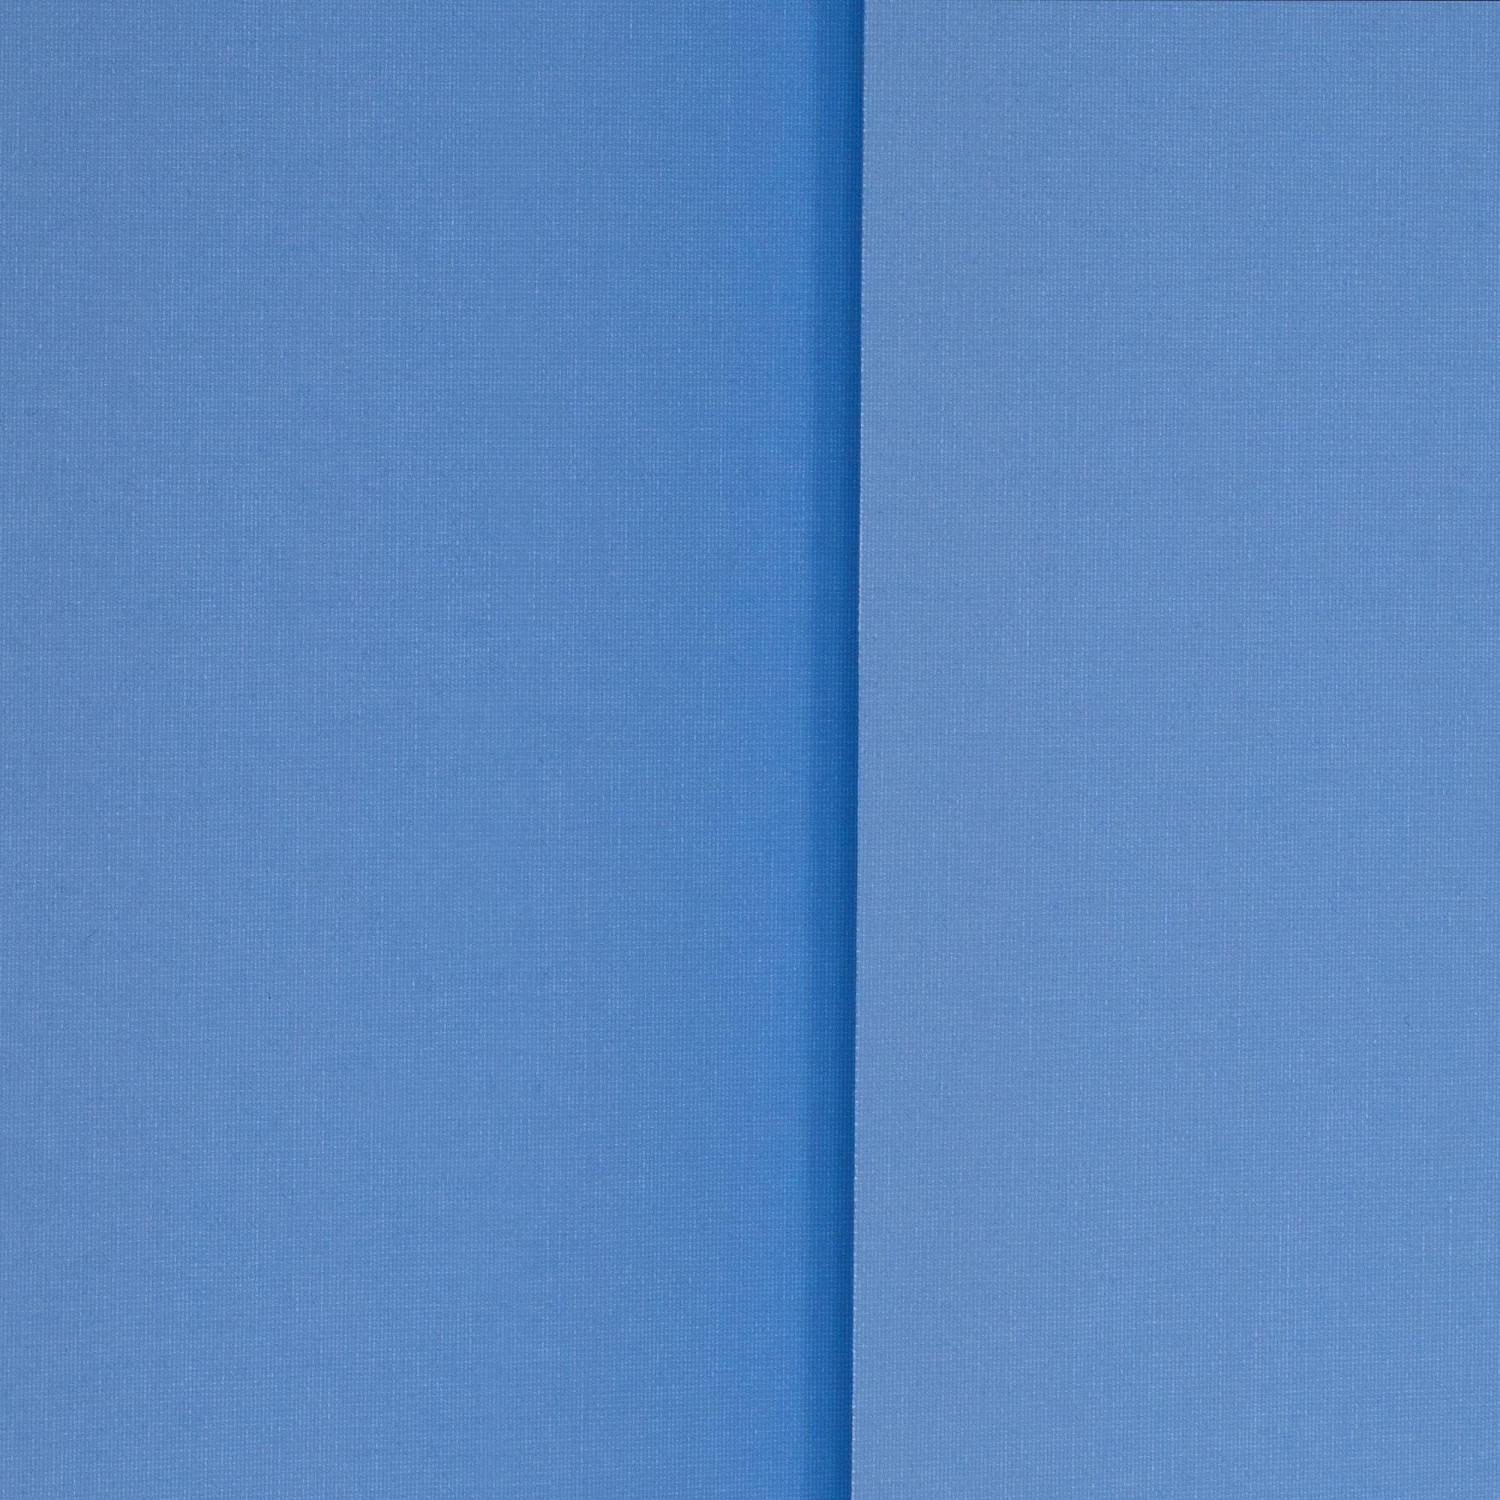 x 139,95 € 127mm bei (250 ab Lamellenvorhang-Vertikalanlage Preisvergleich 180cm) | Blau Liedeco